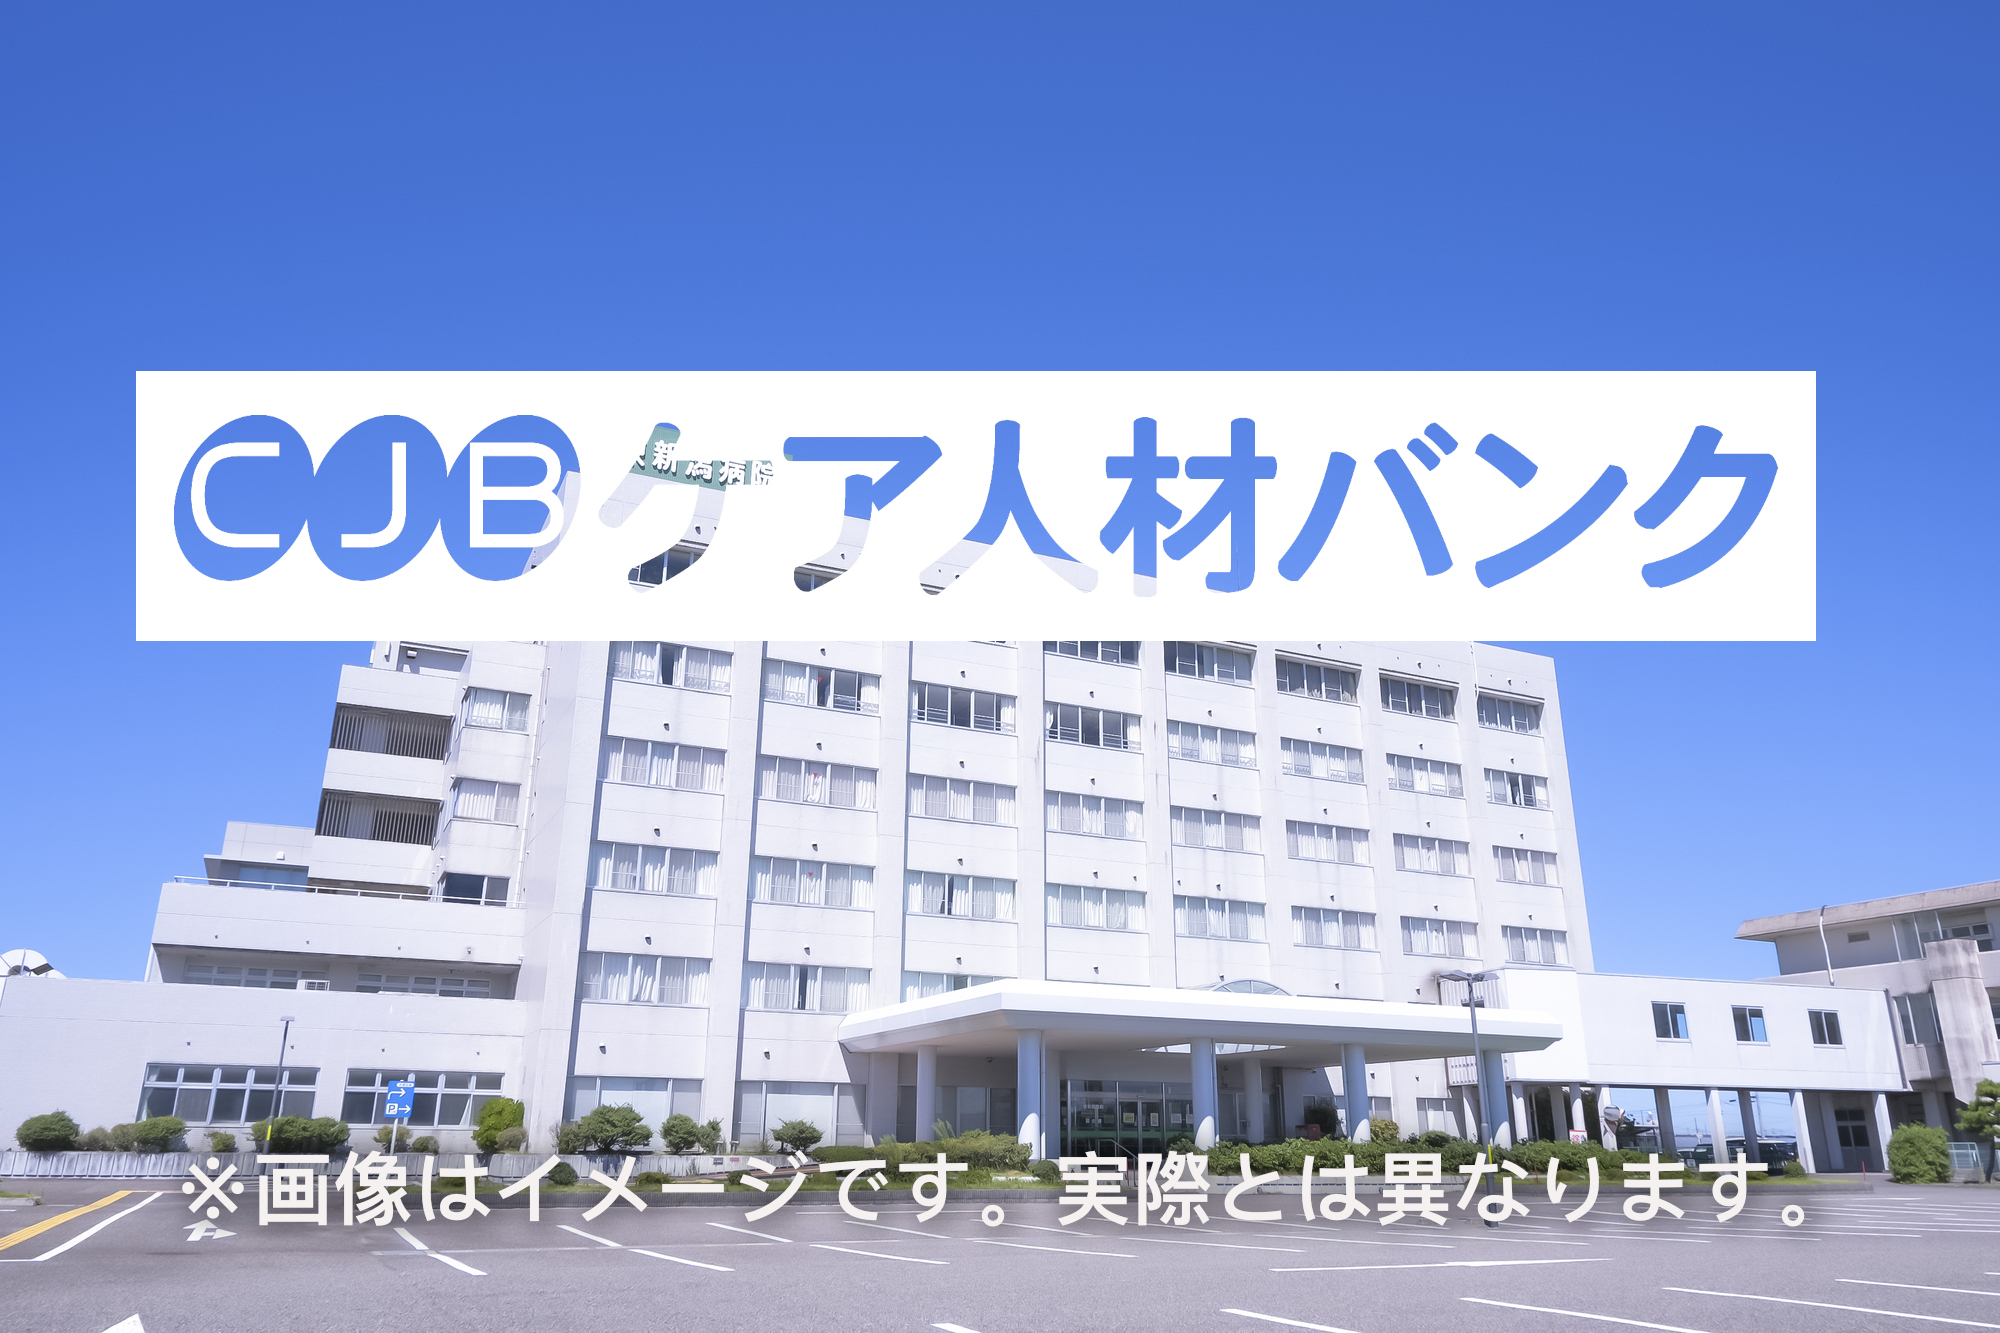 朝日大学病院 のイメージ画像